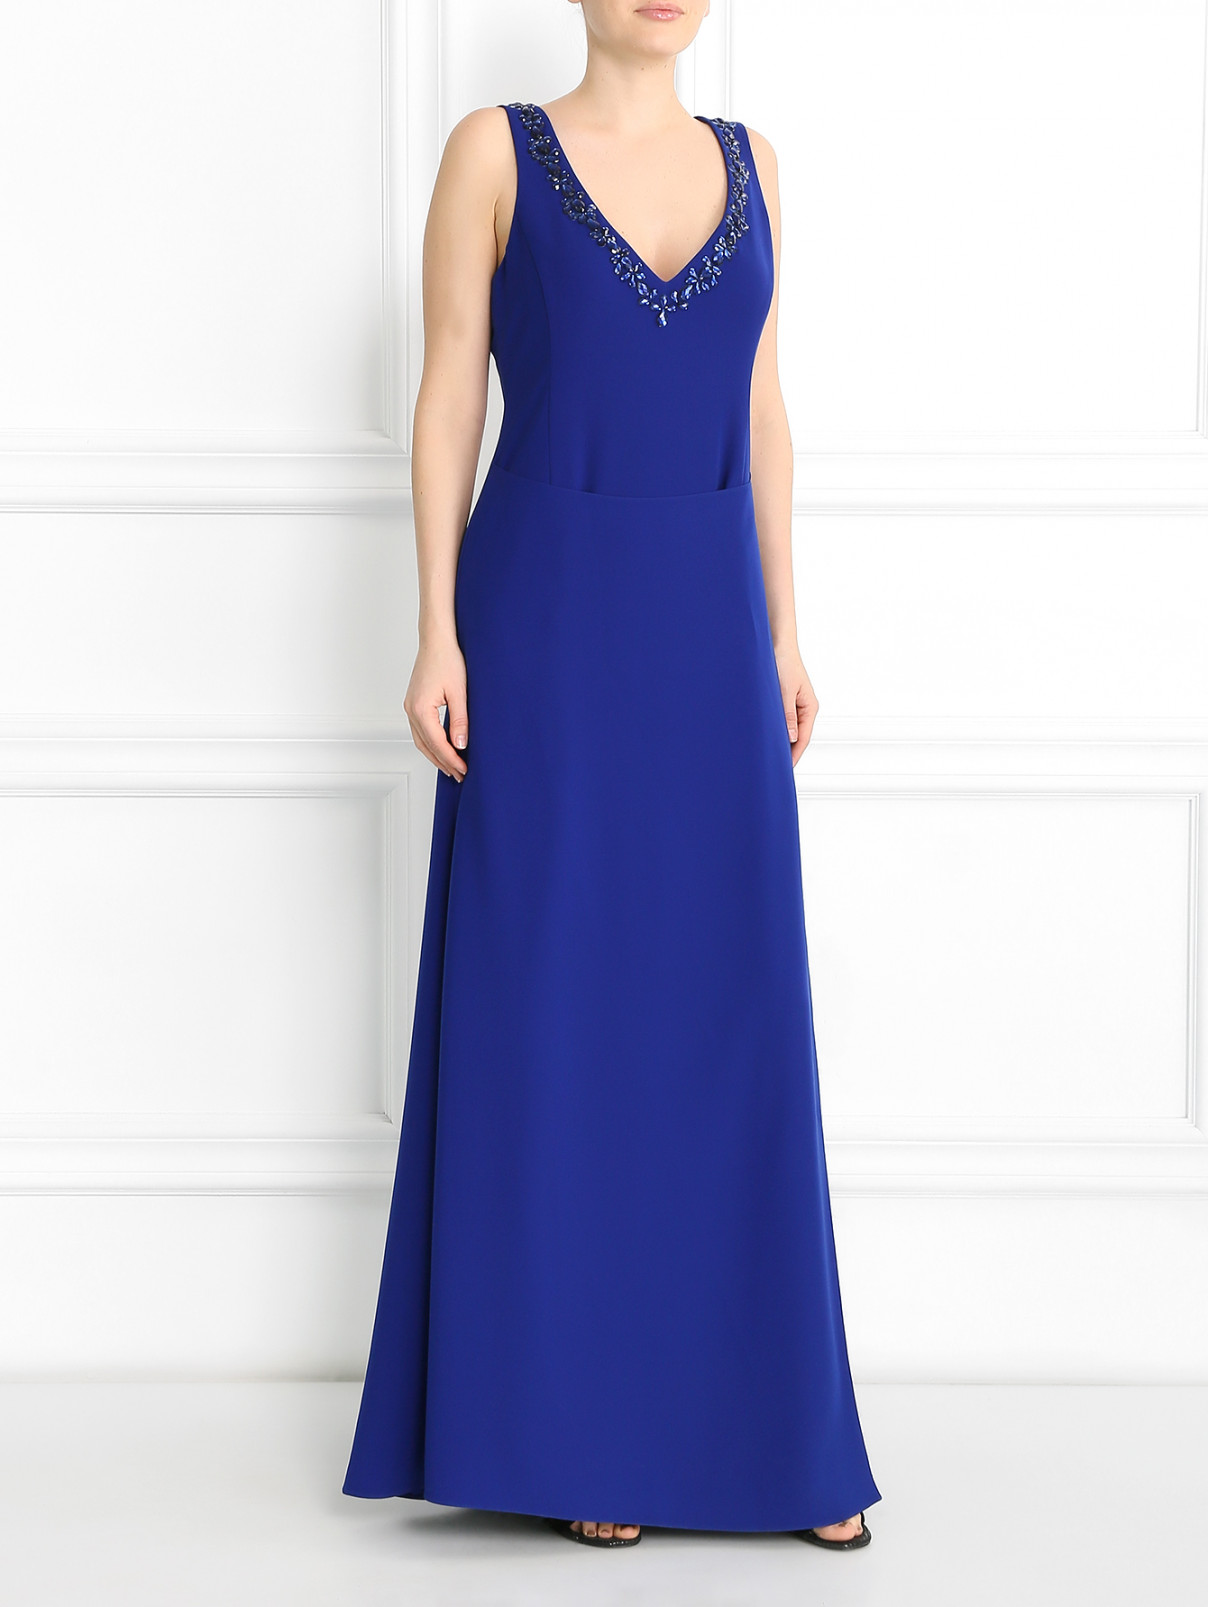 Платье-макси с запахом декорированное камнями Emporio Armani  –  Модель Общий вид  – Цвет:  Синий